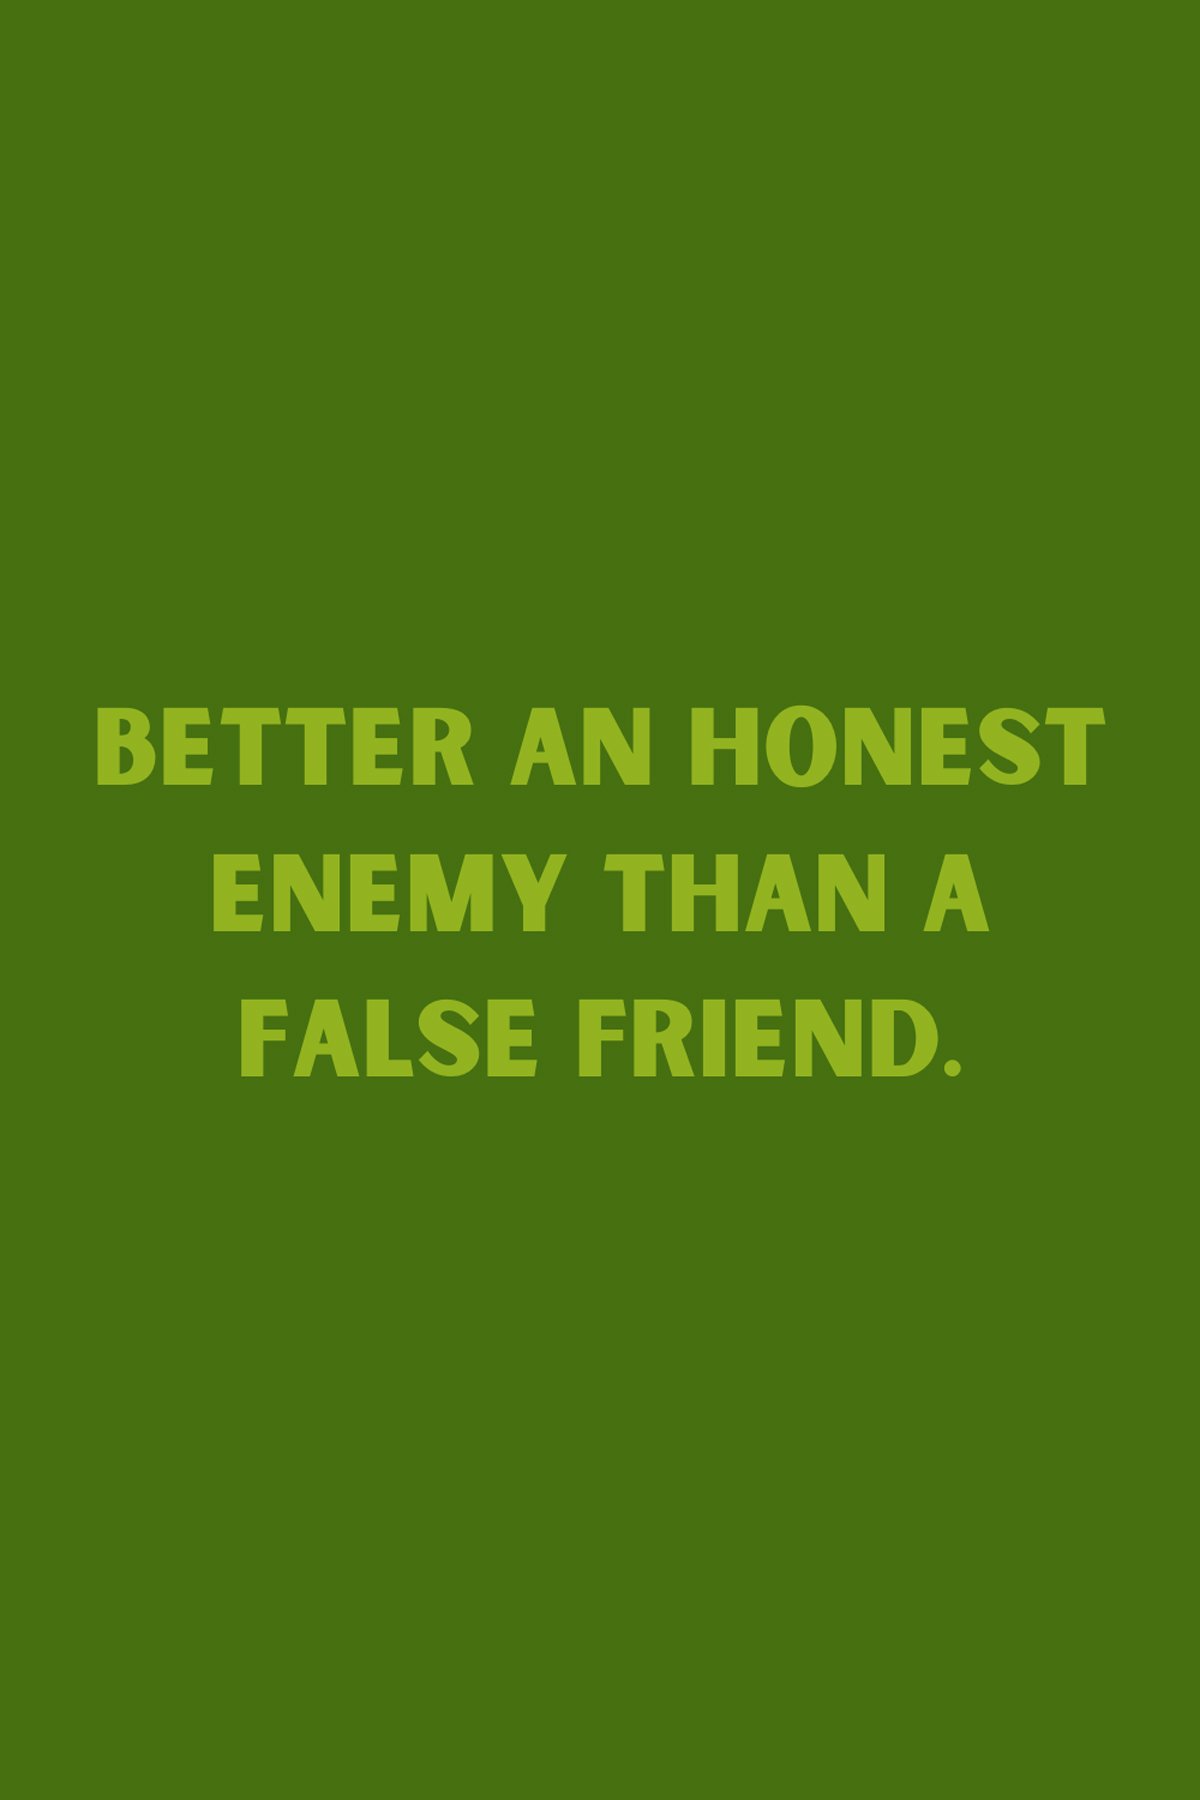 False Friend Quotes